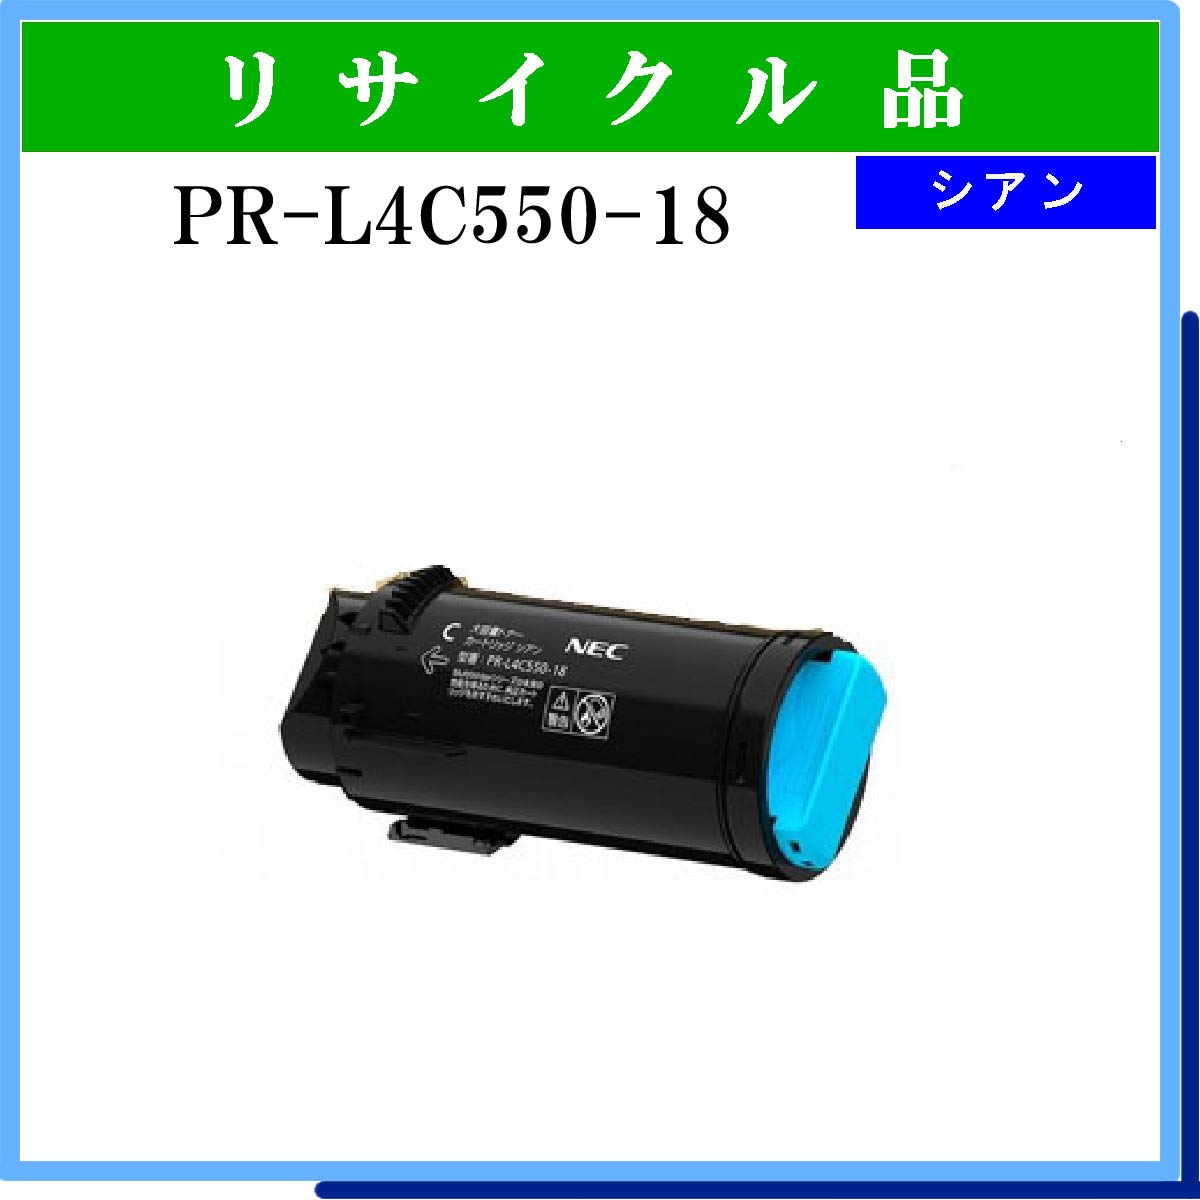 PR-L4C550-18 ｼｱﾝ